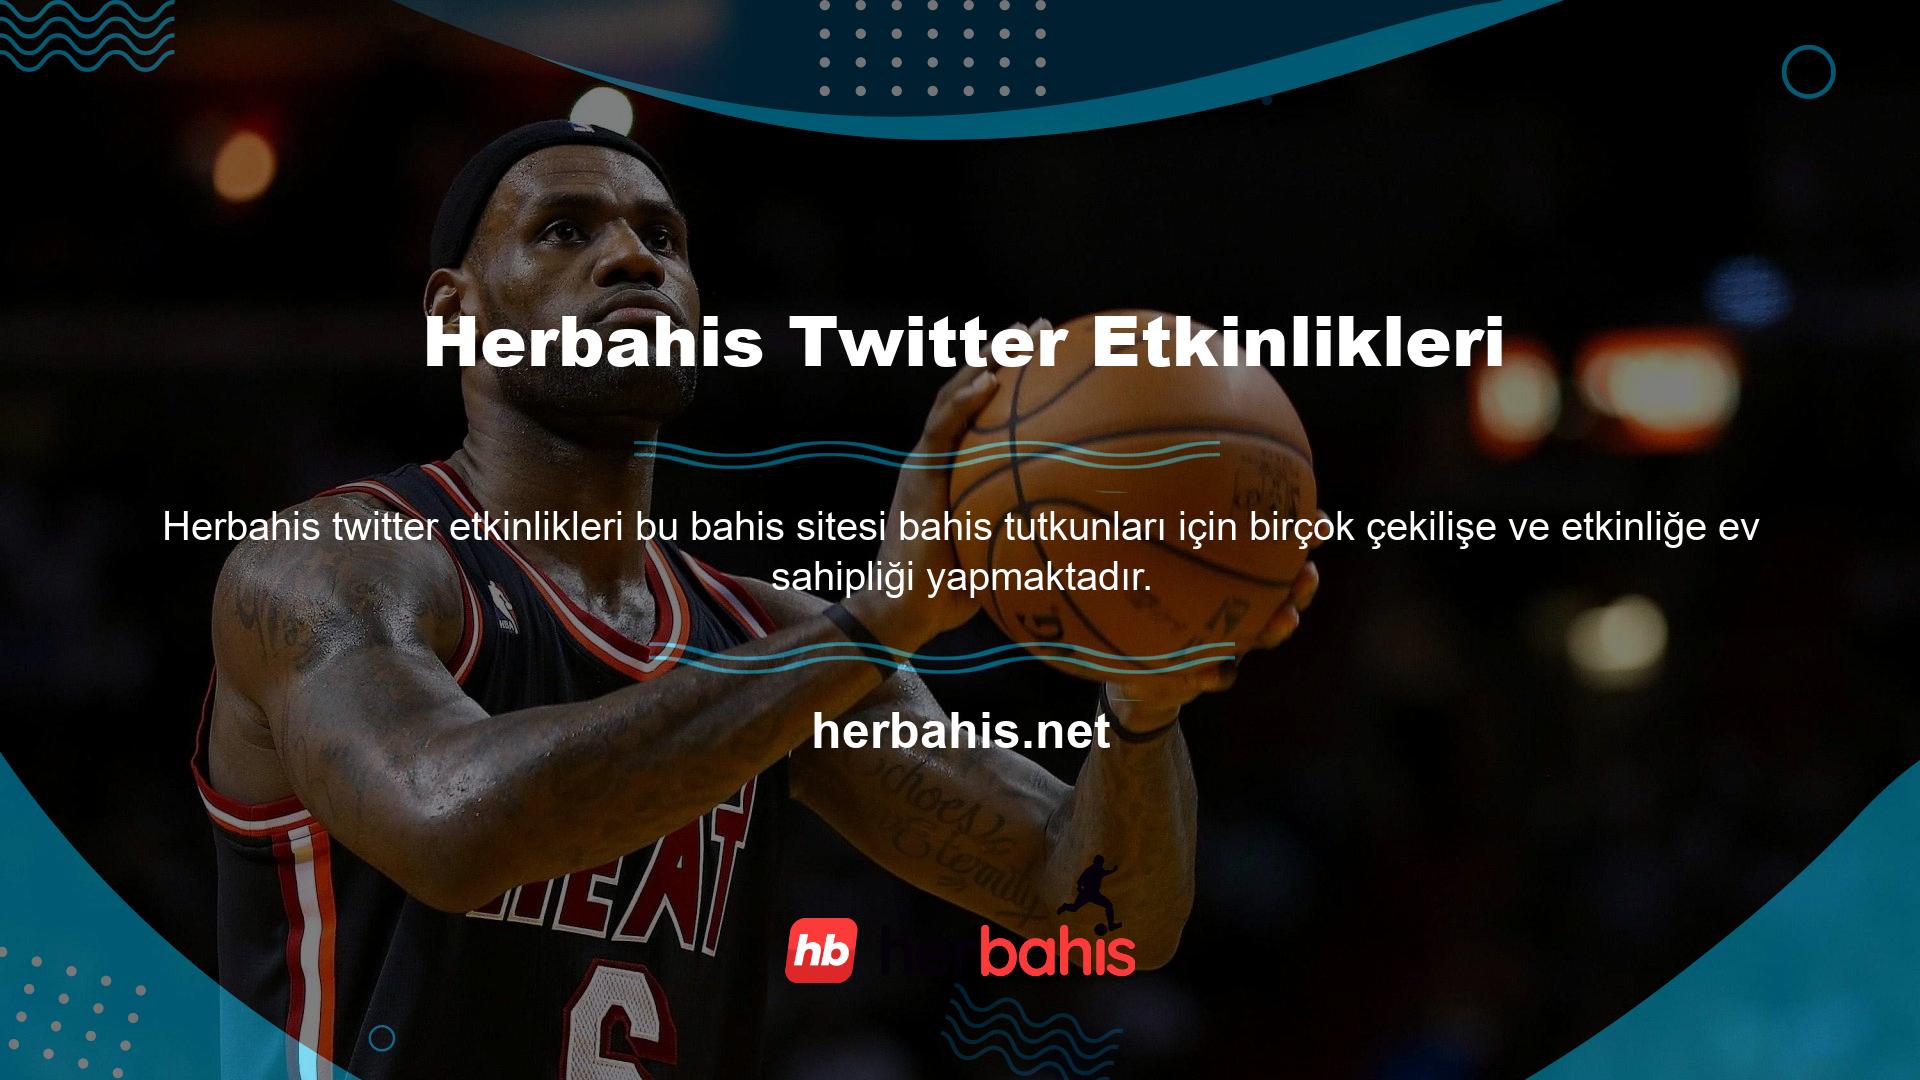 Etkinlik ve yarışma güncellemeleri için Herbahis Twitter'da takip edin